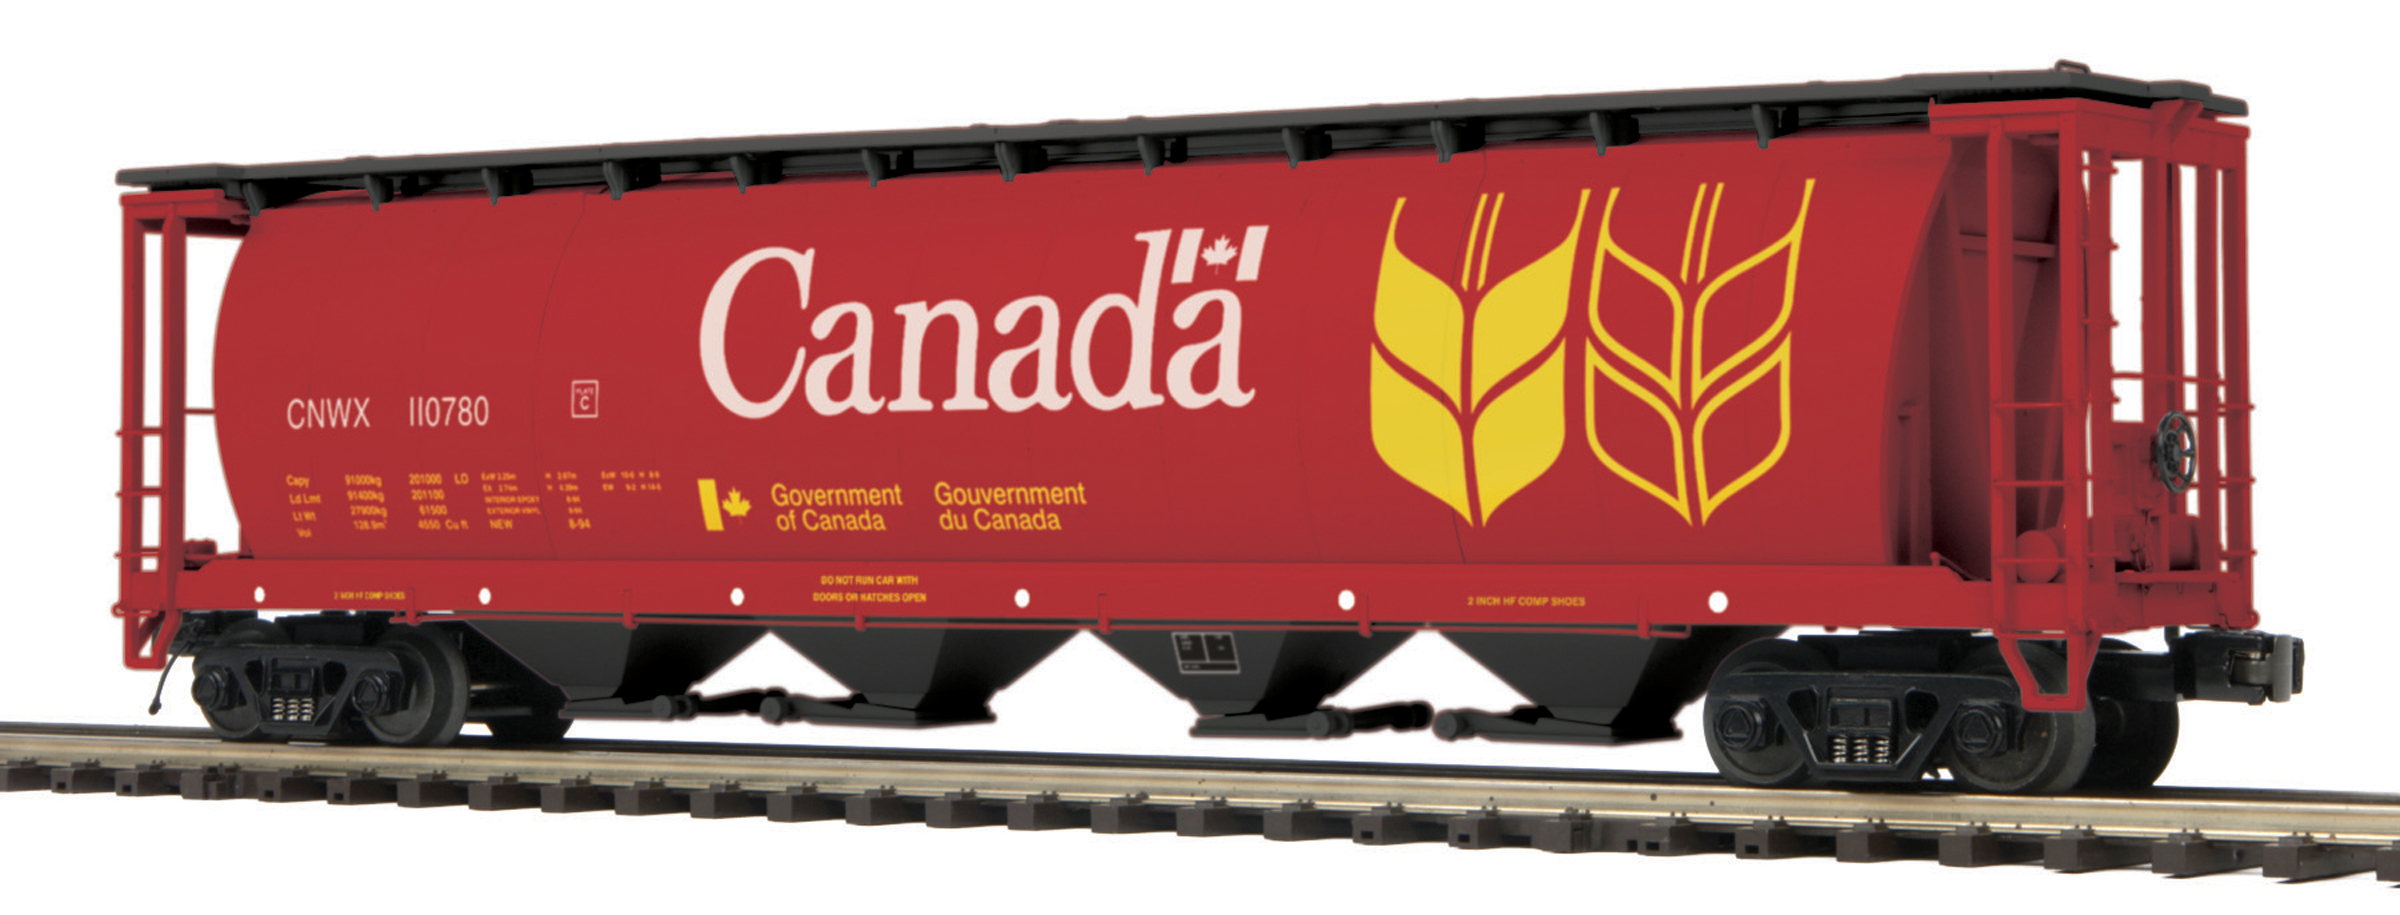 Canada Wheat 100-Ton Hopper image